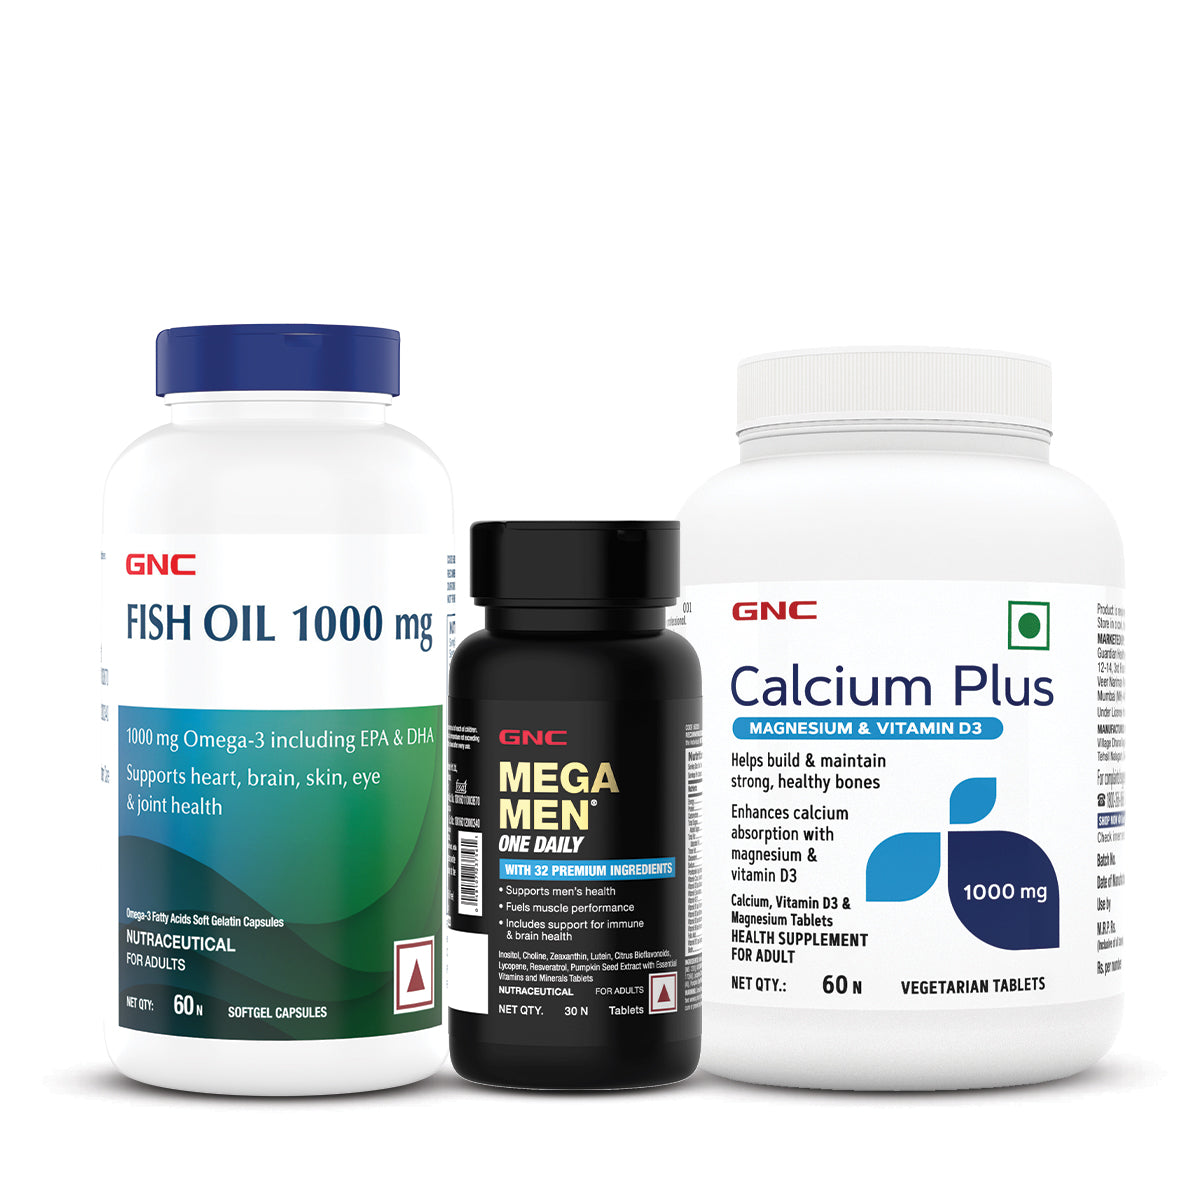 GNC Calcium Plus With Magnesium & Vitamin D3 + Mega Men One Daily Multivitamin for Men +  Fish Body Oil for Men & Women